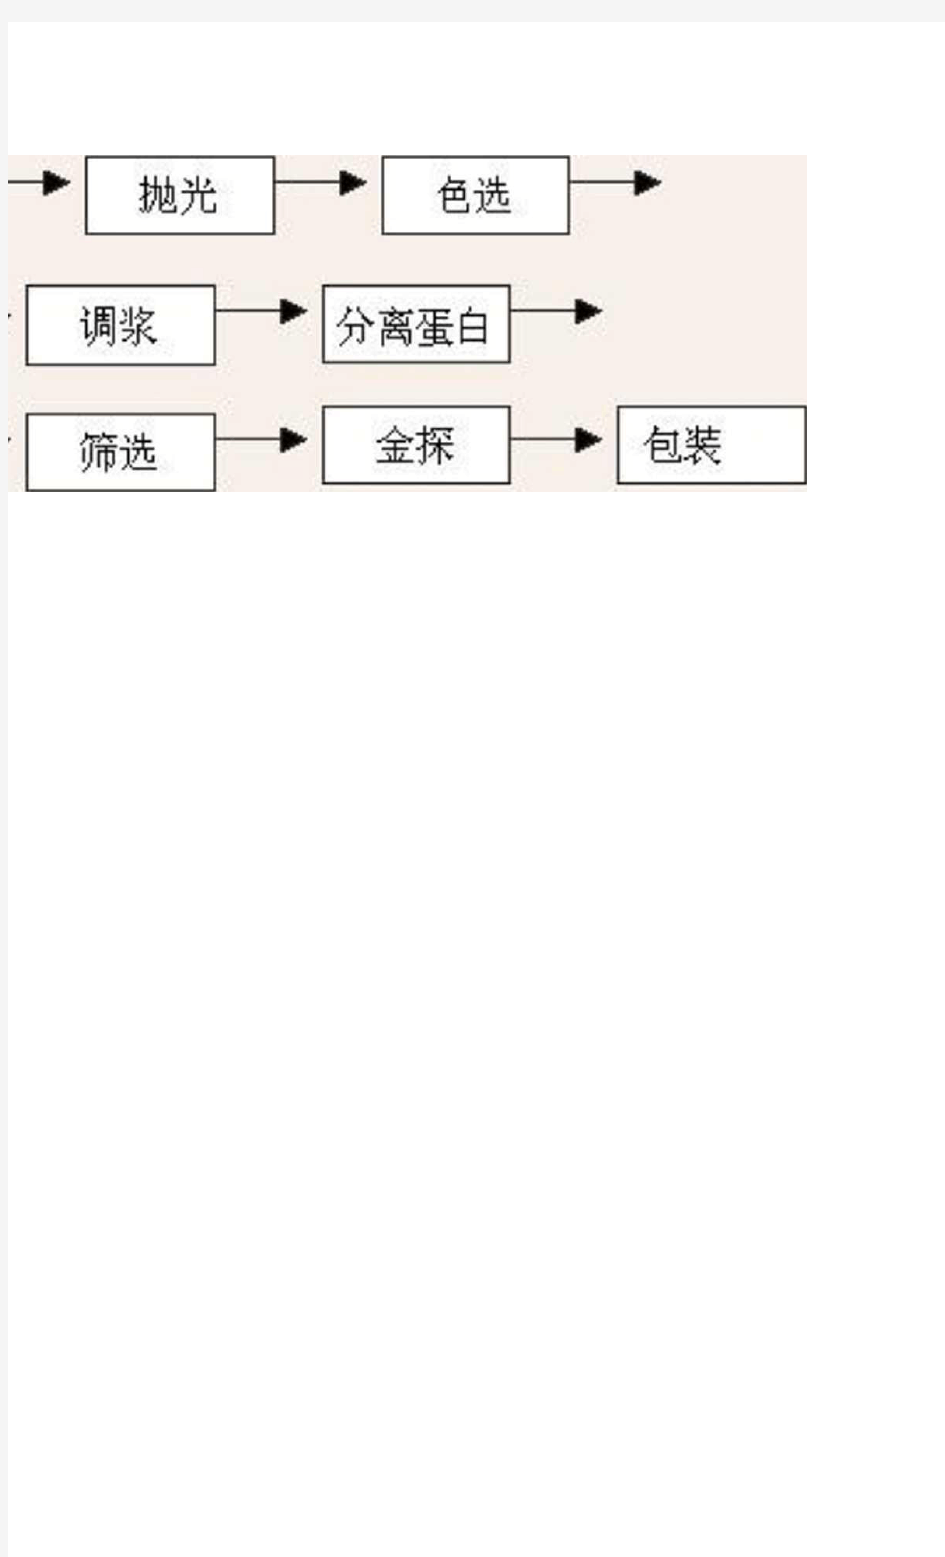 大米生产工艺流程图